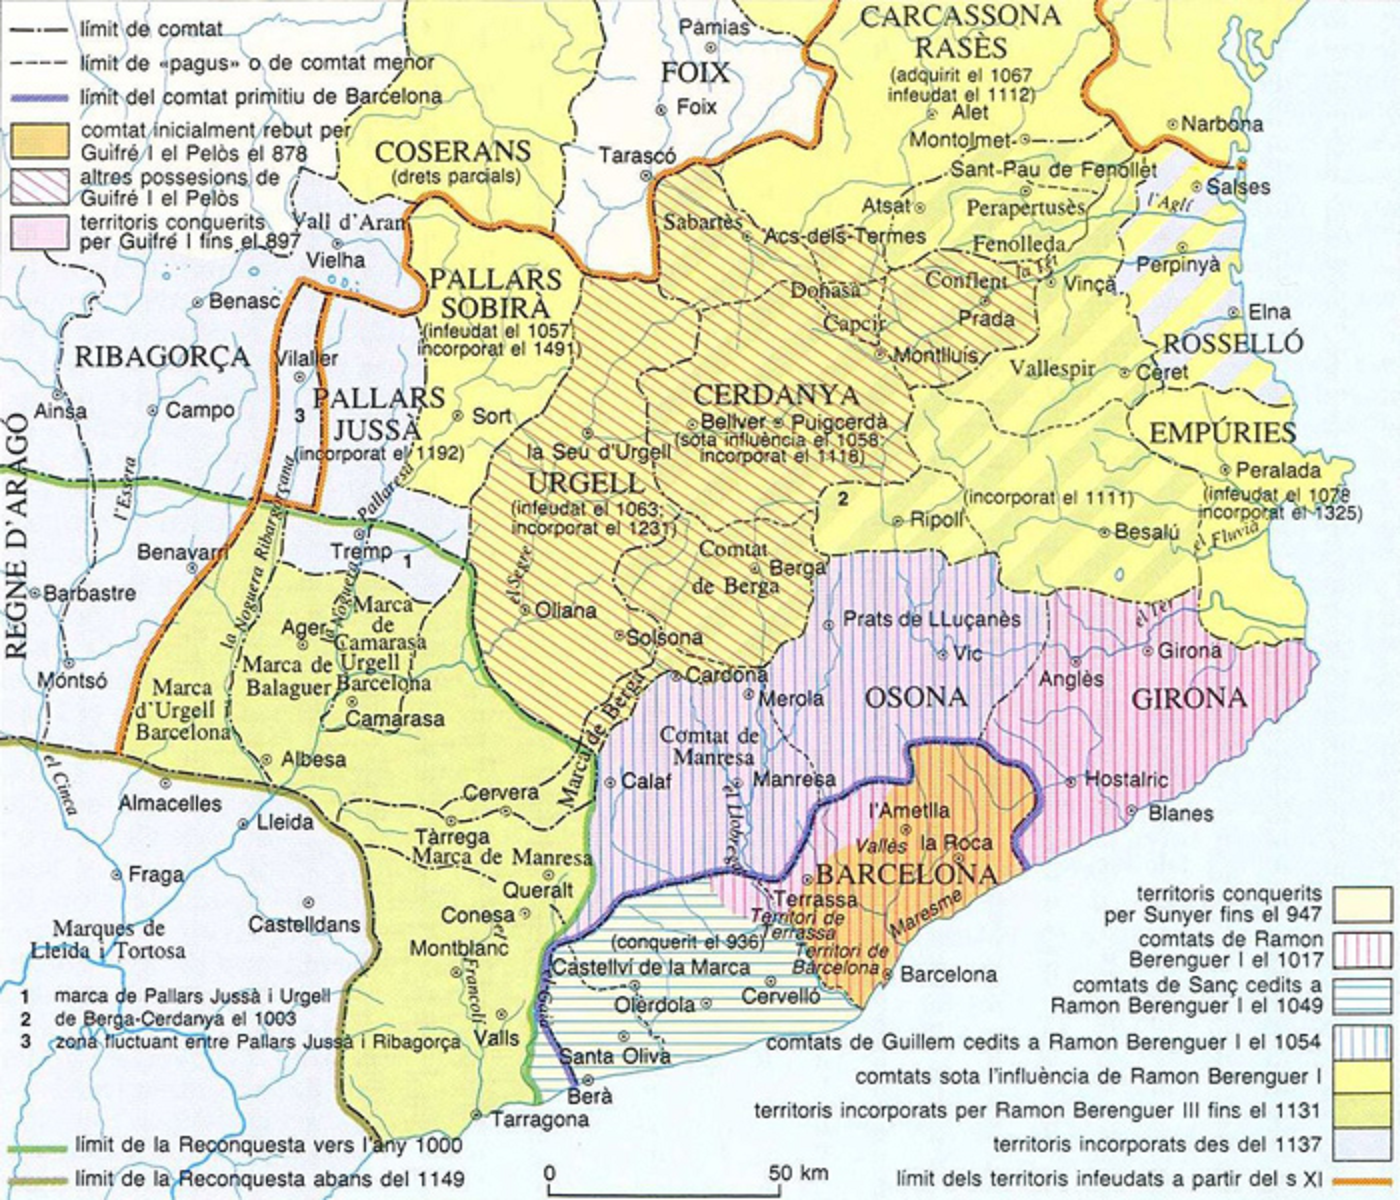 La Catalunya Nova: el ‘far west’ dels comtes independents de Barcelona